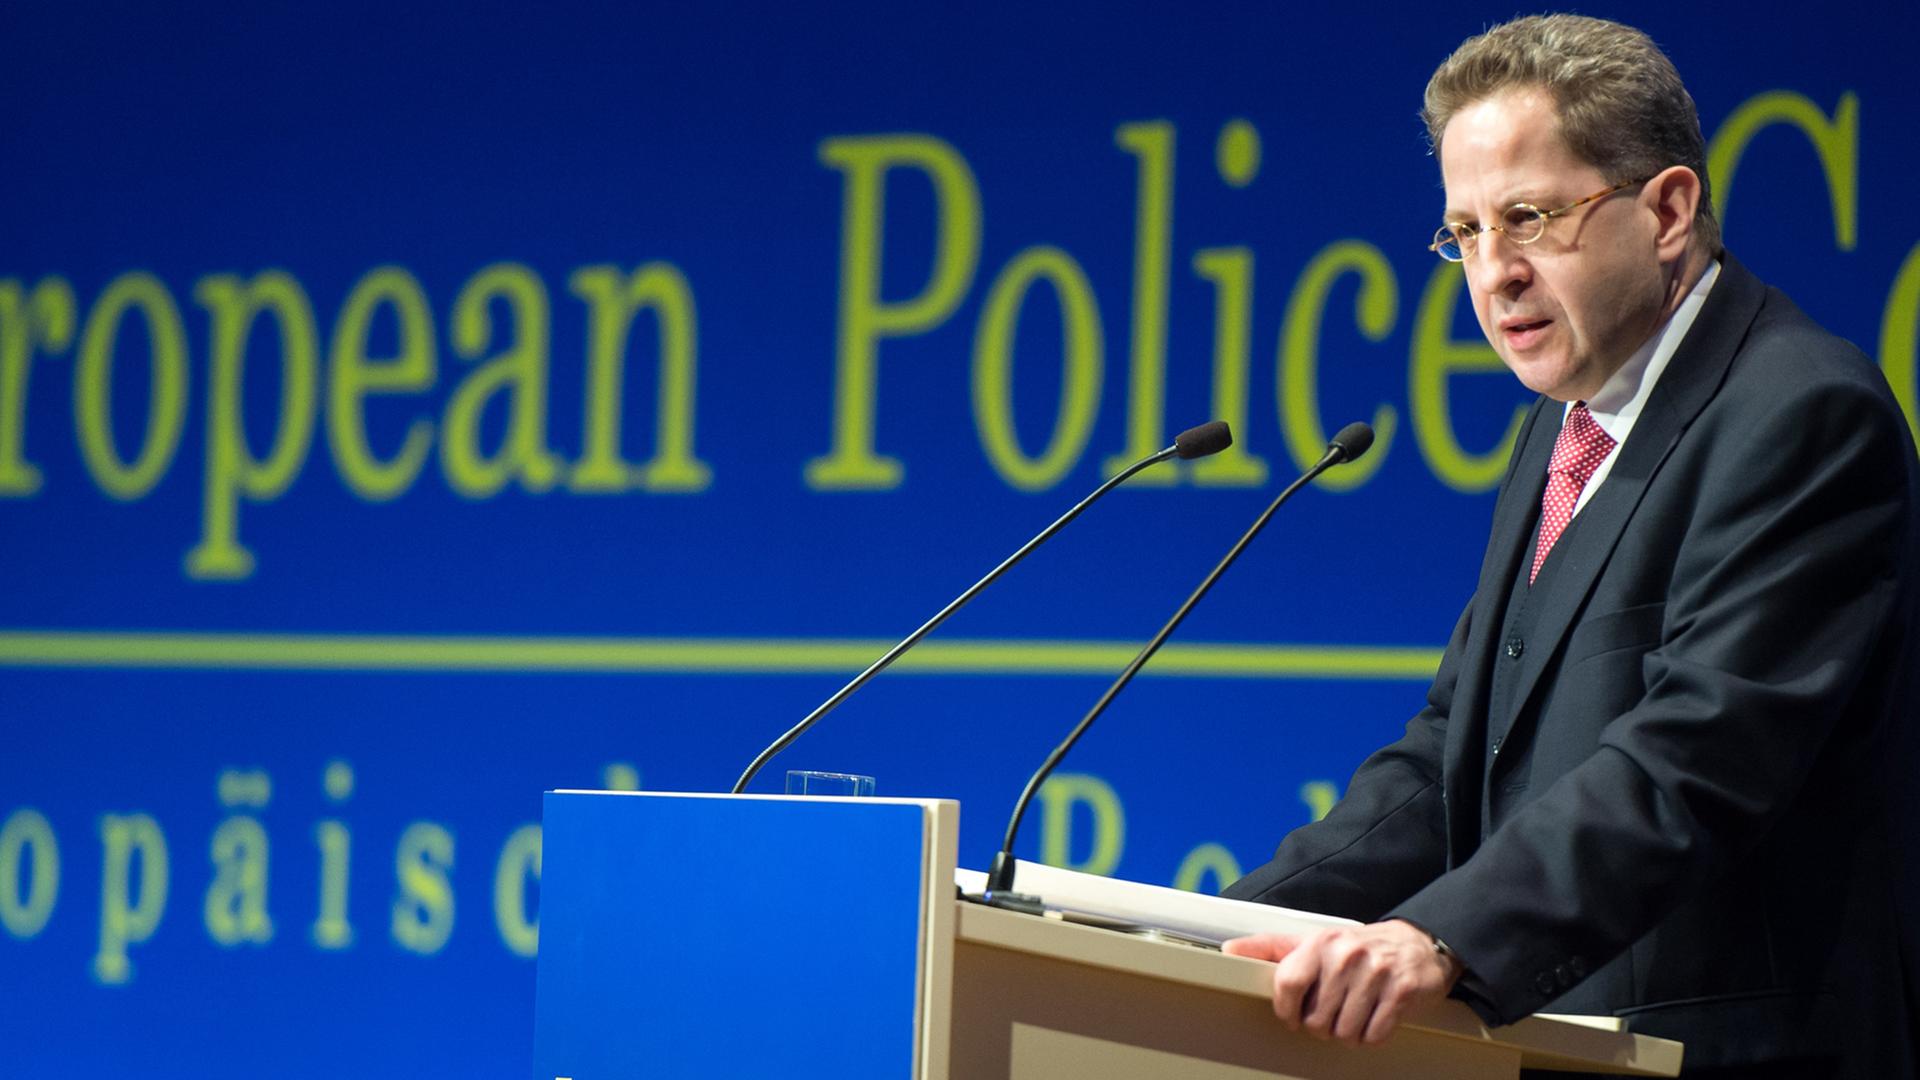 Hans-Georg Maaßen, Präsident des Bundesamtes für Verfassungsschutz, spricht beim 18. Europäischen Polizeikongress.